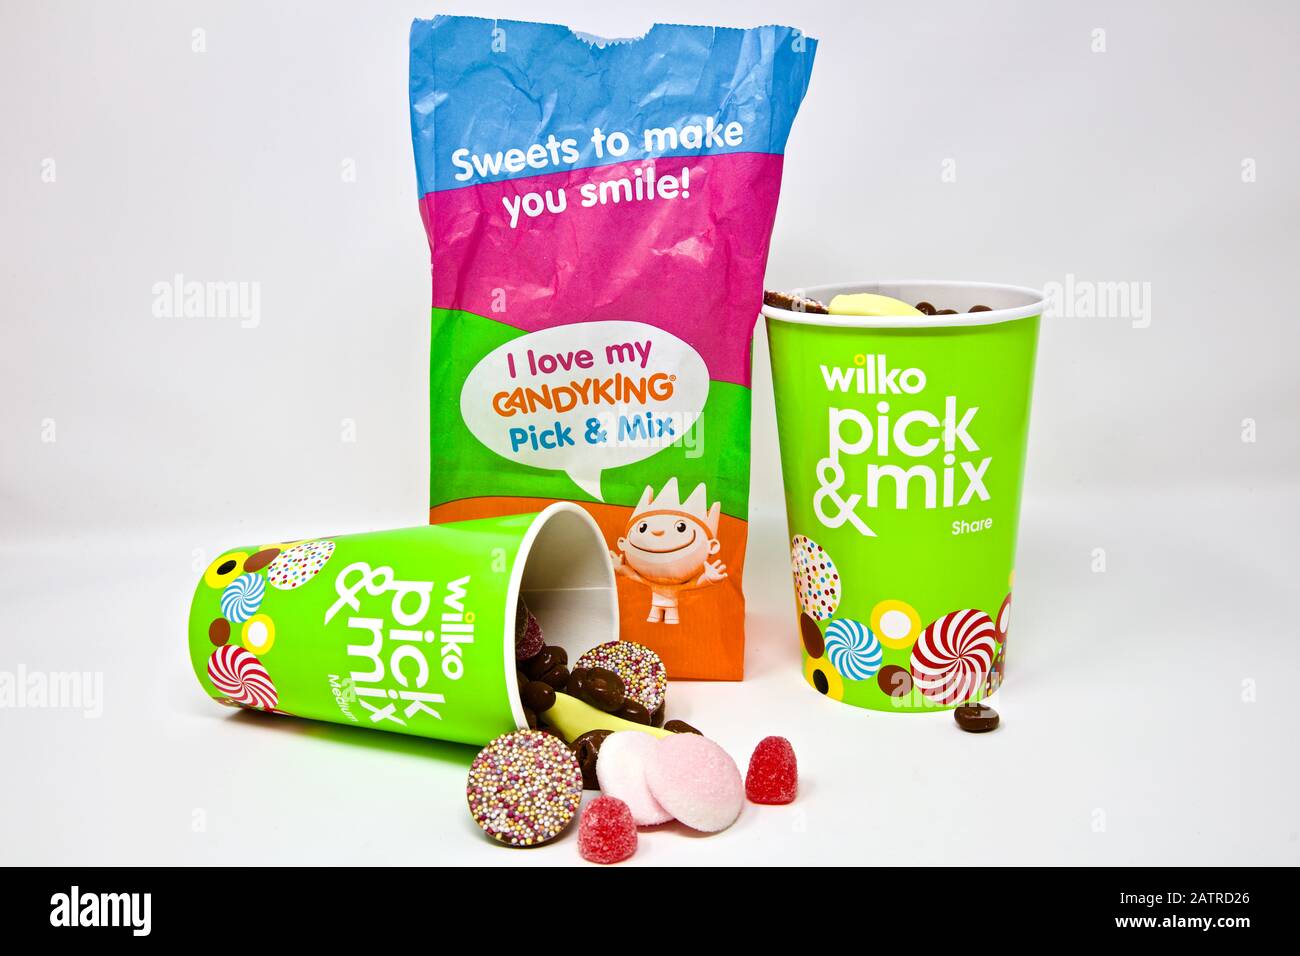 Wilko - choisir et mélanger les favoris de Candy King Banque D'Images